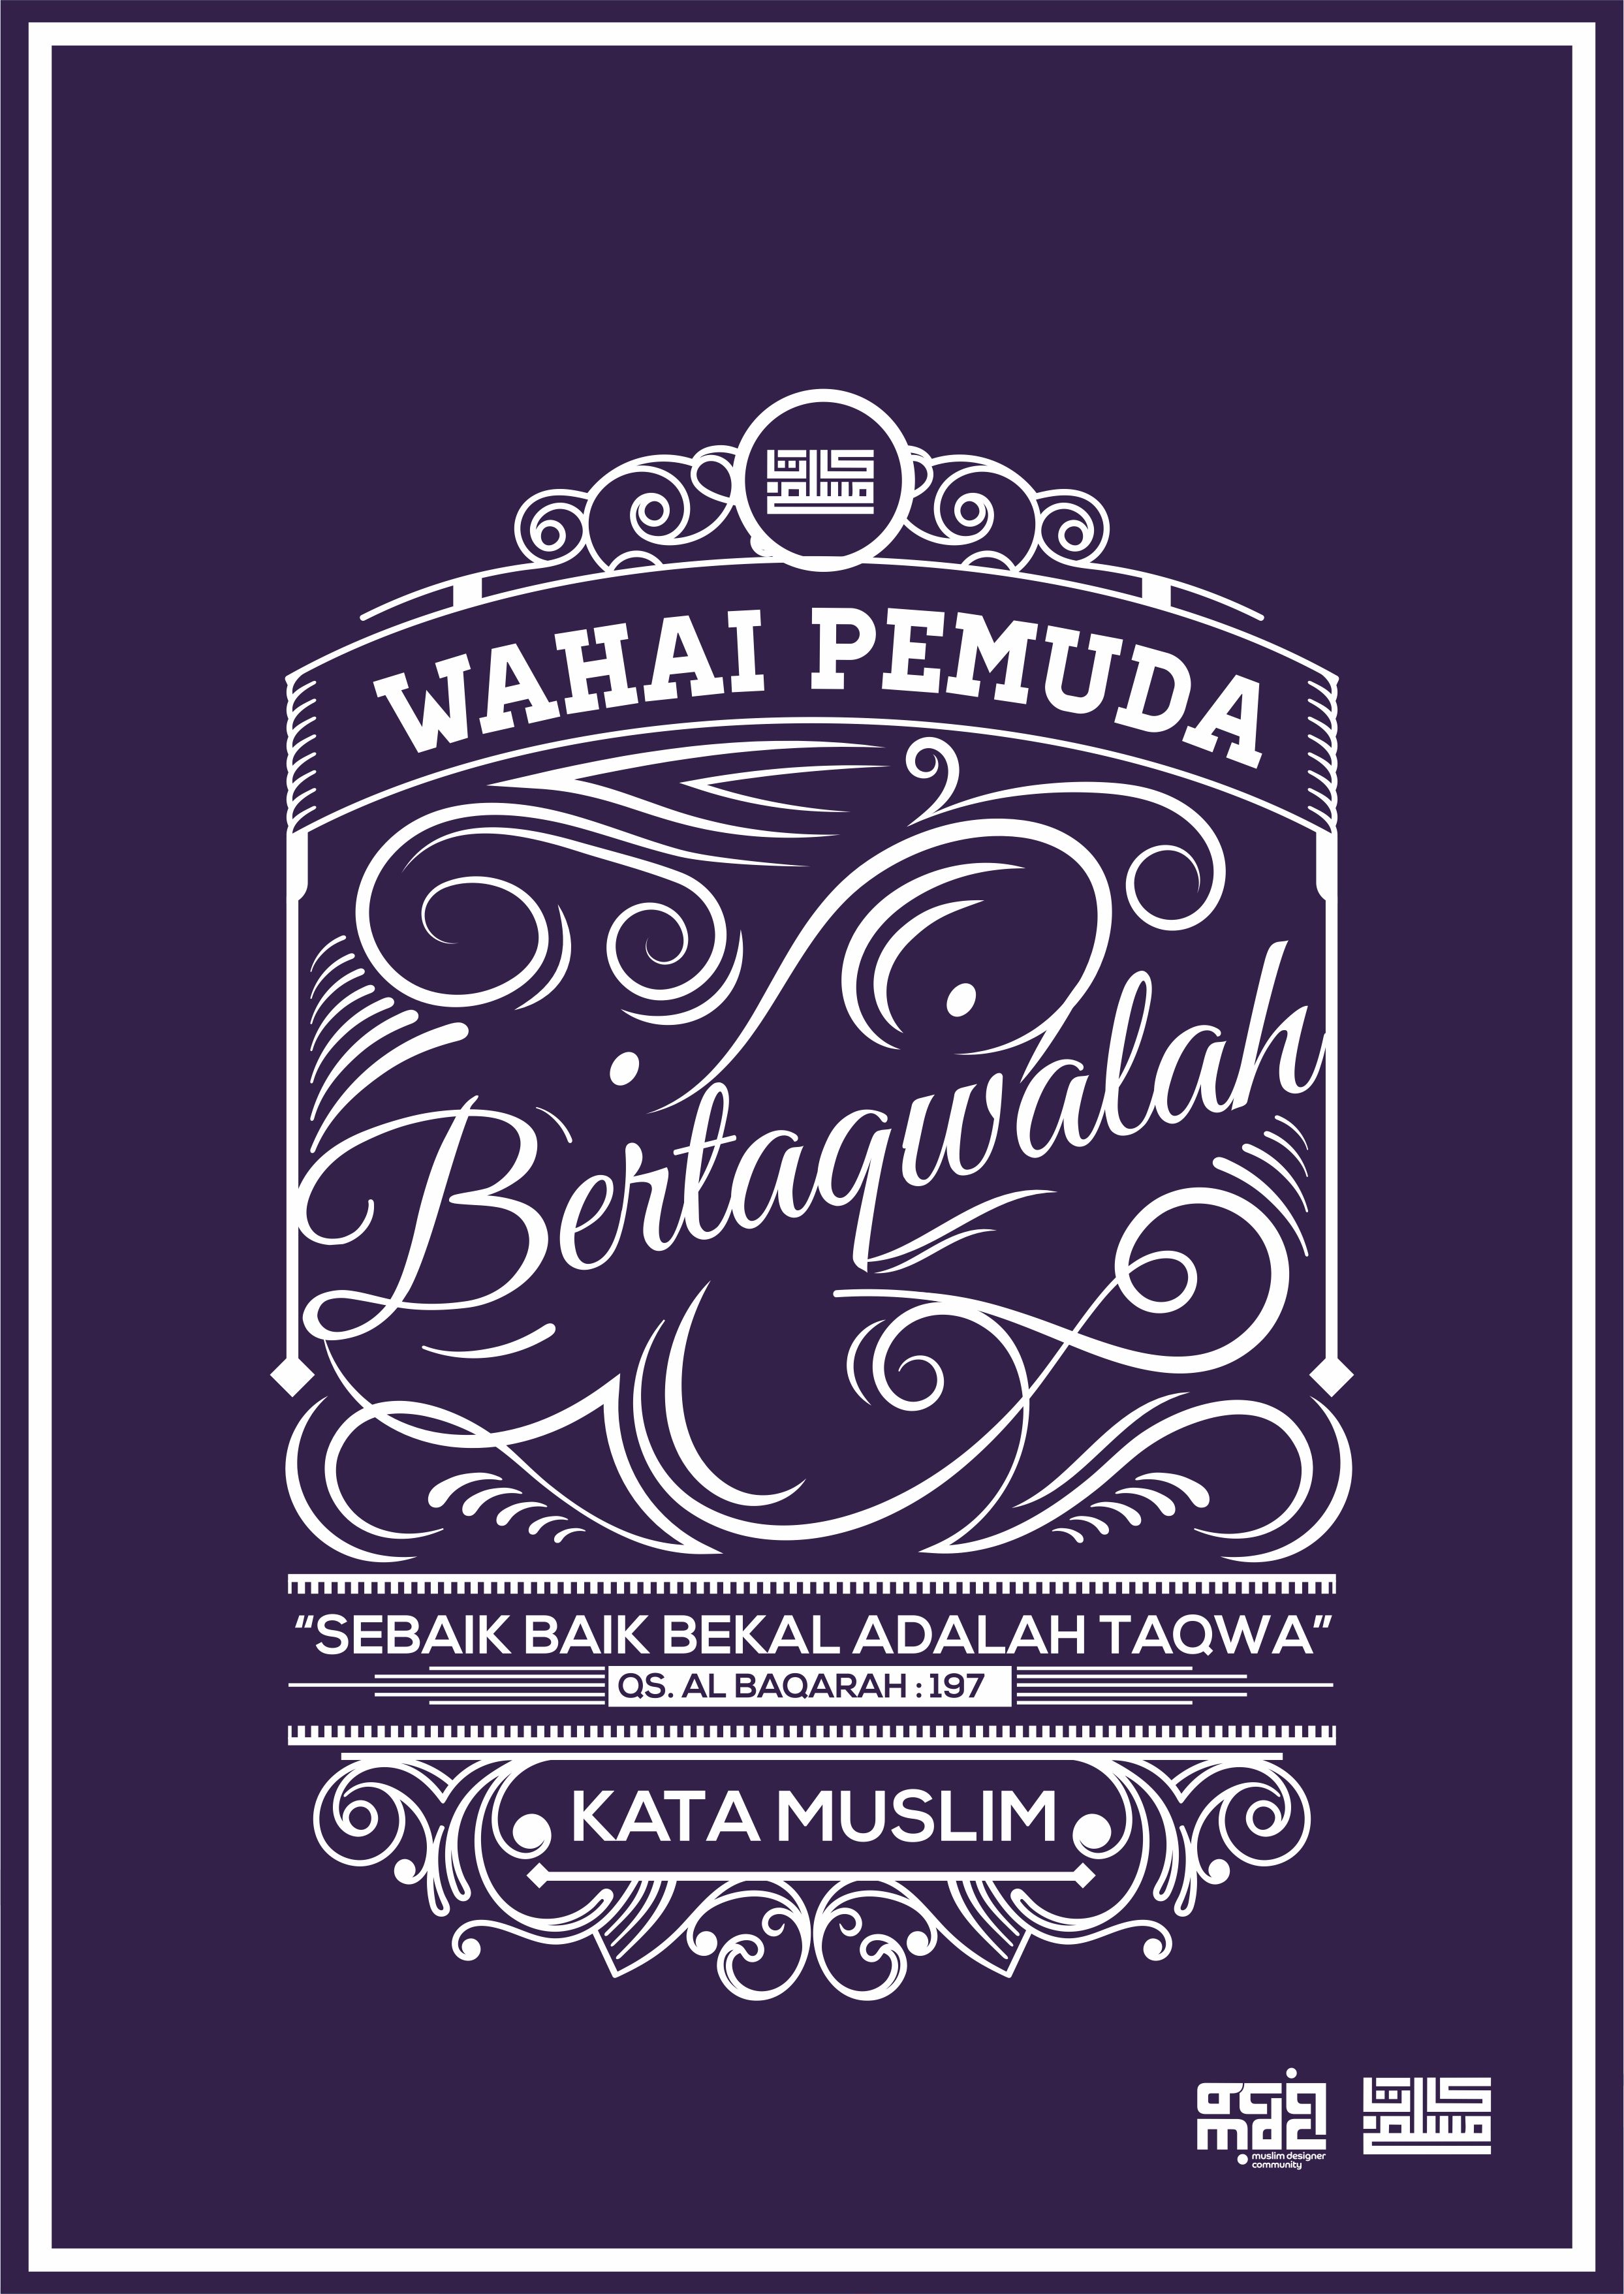 Download Gratis Desain Poster Dakwah Karya Kata Muslim Hello Hijabers